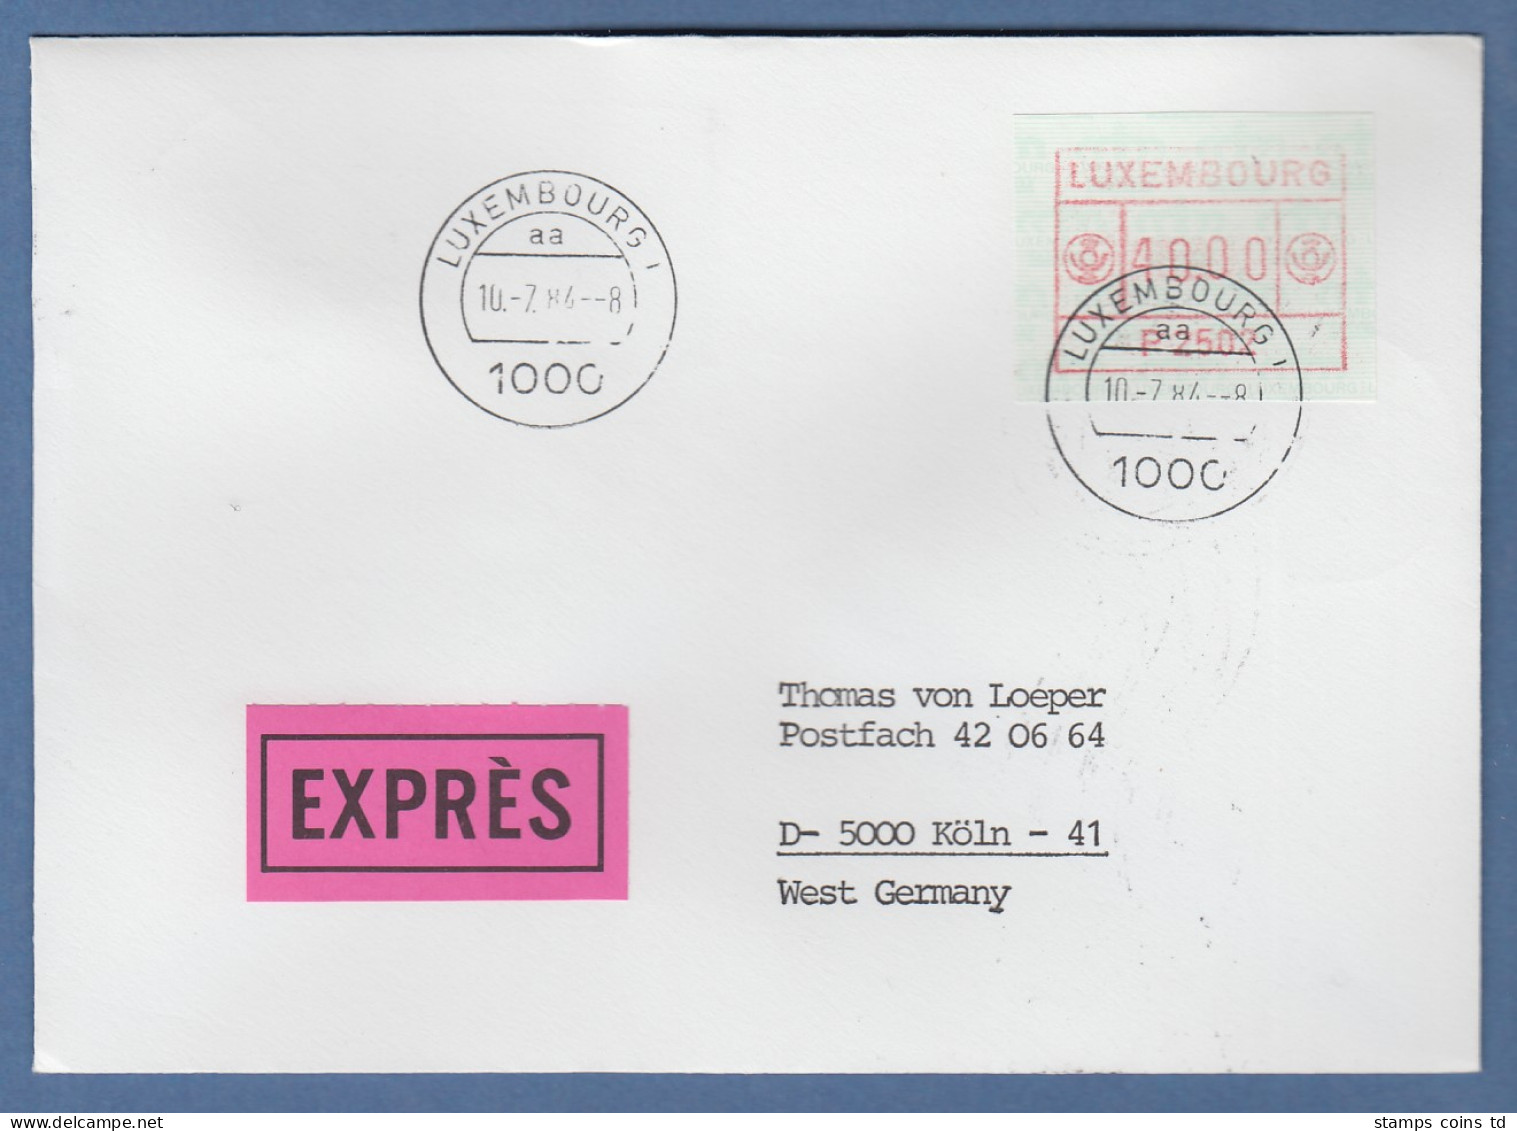 Luxemburg ATM P2502 Wert 40 Auf Express-FDC Nach Köln, 10.7.84 - Postage Labels